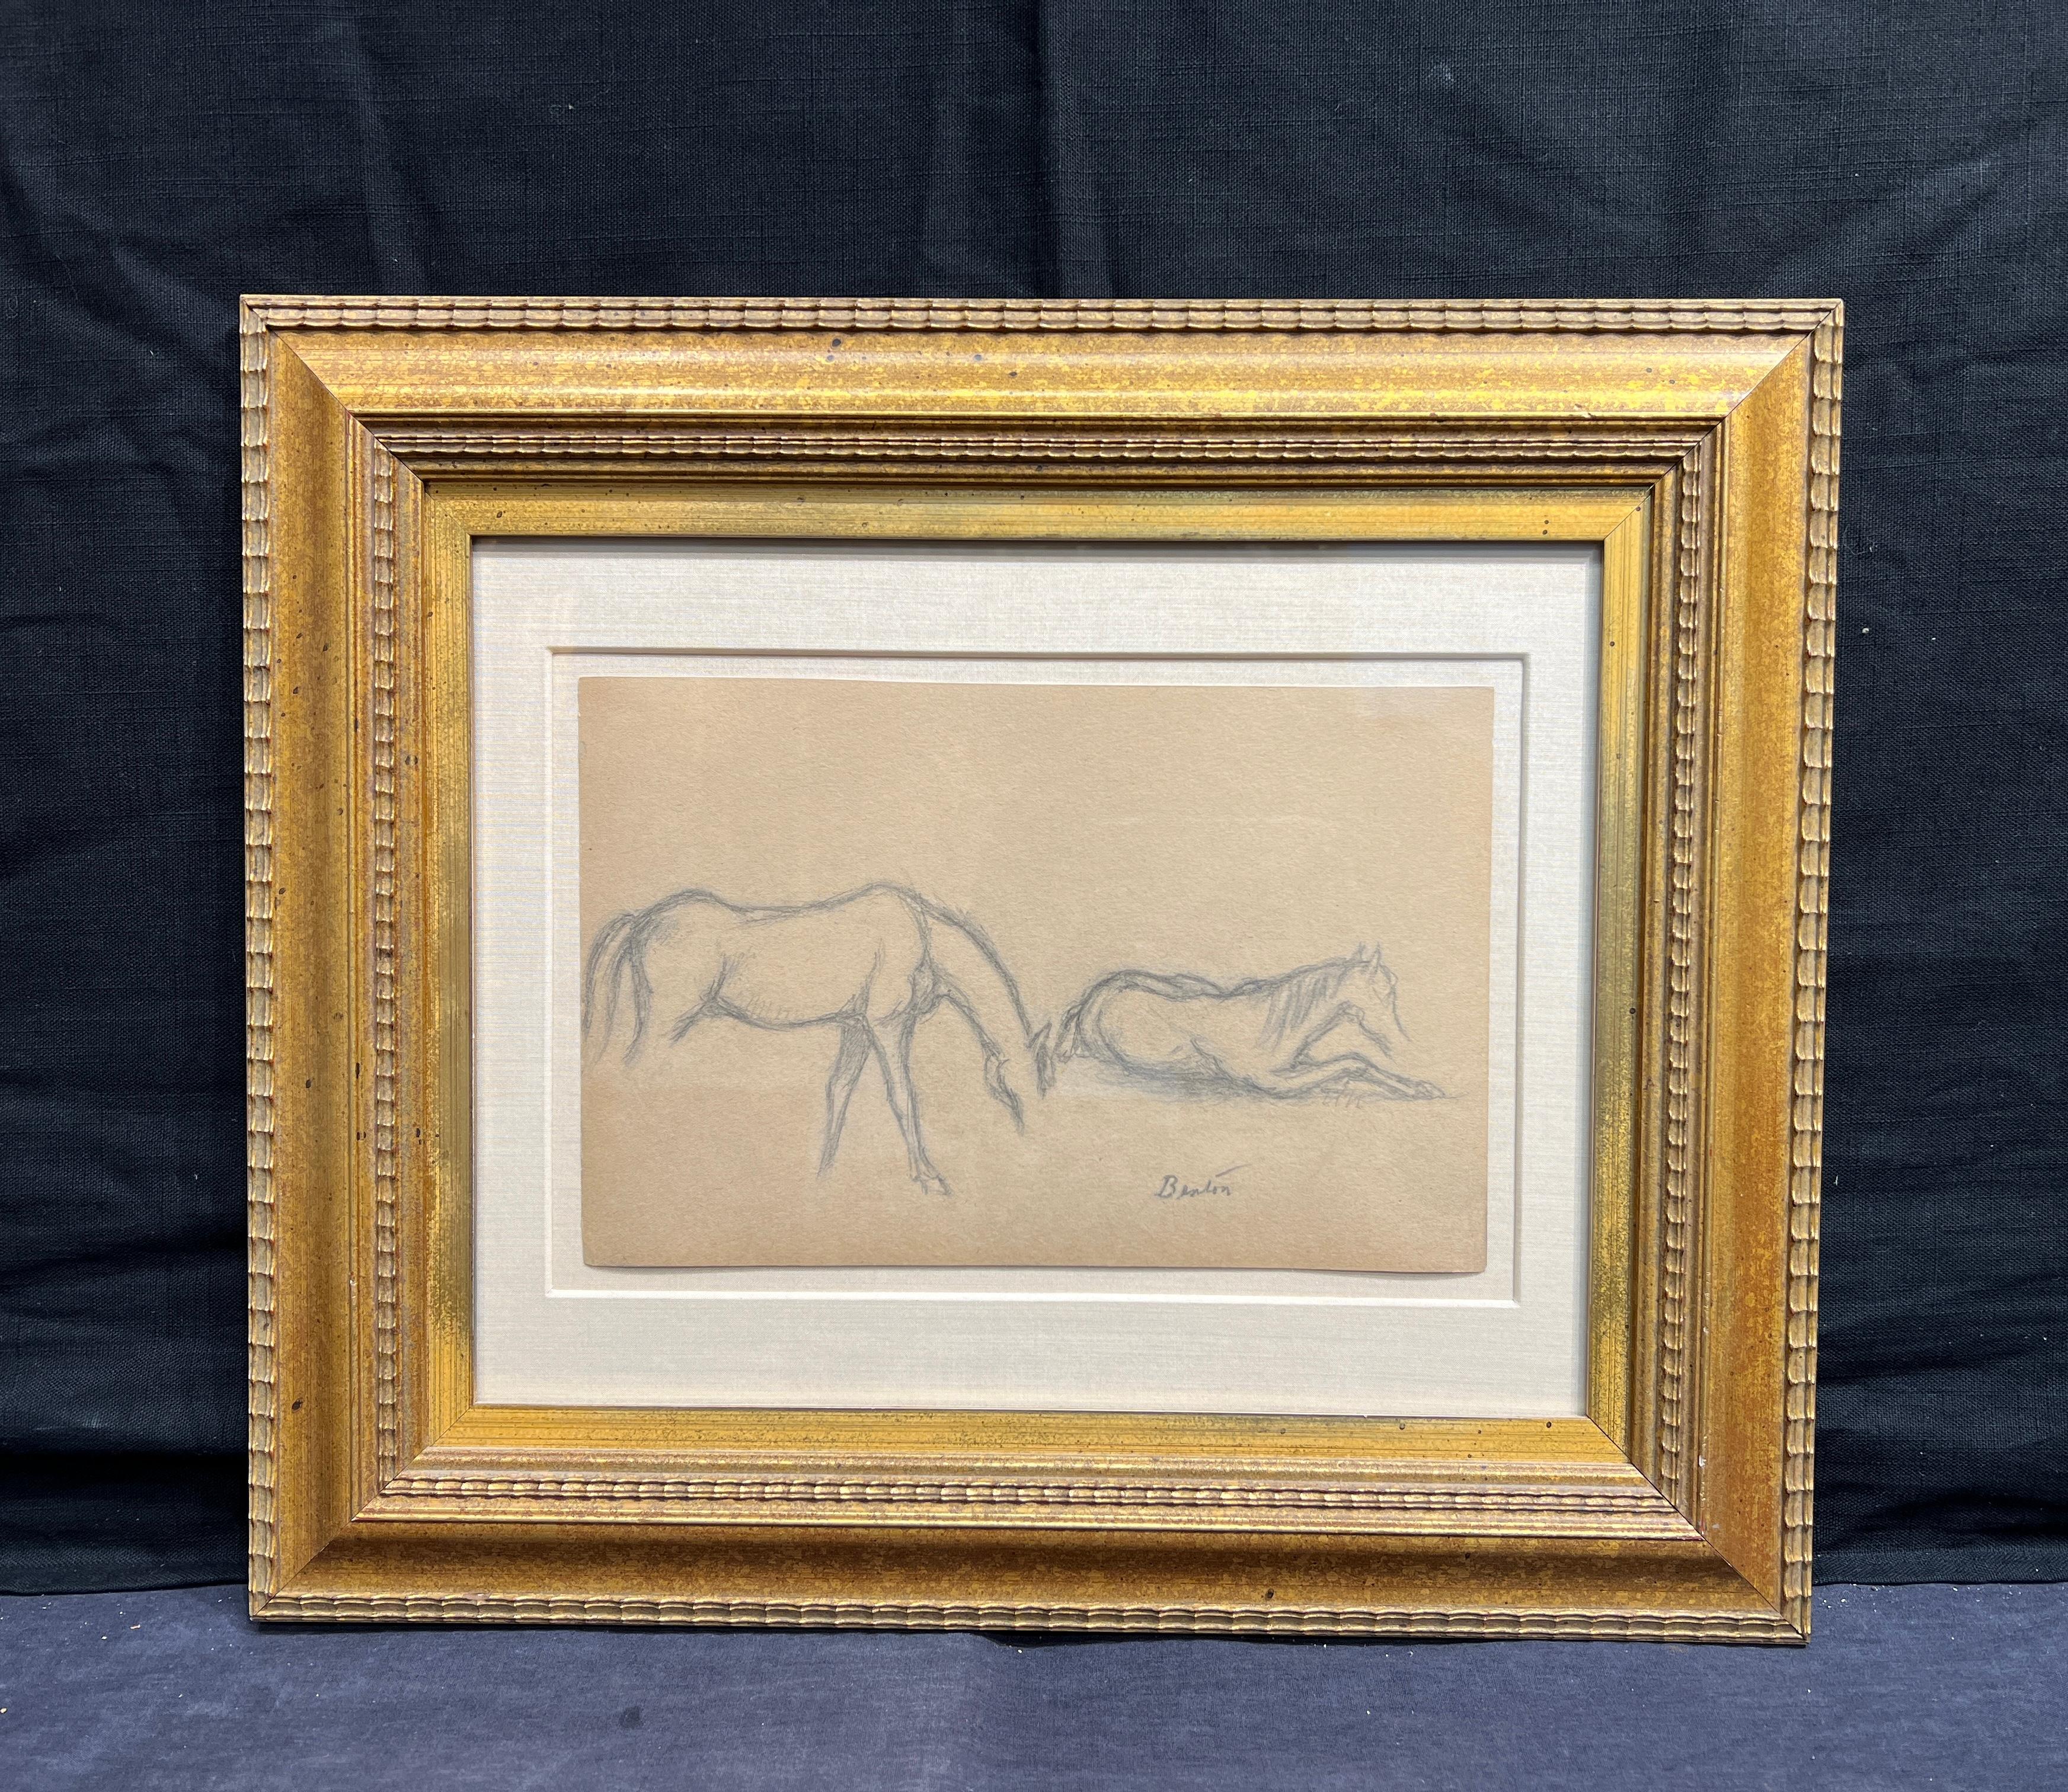 Two Horses - Art by Thomas Hart Benton